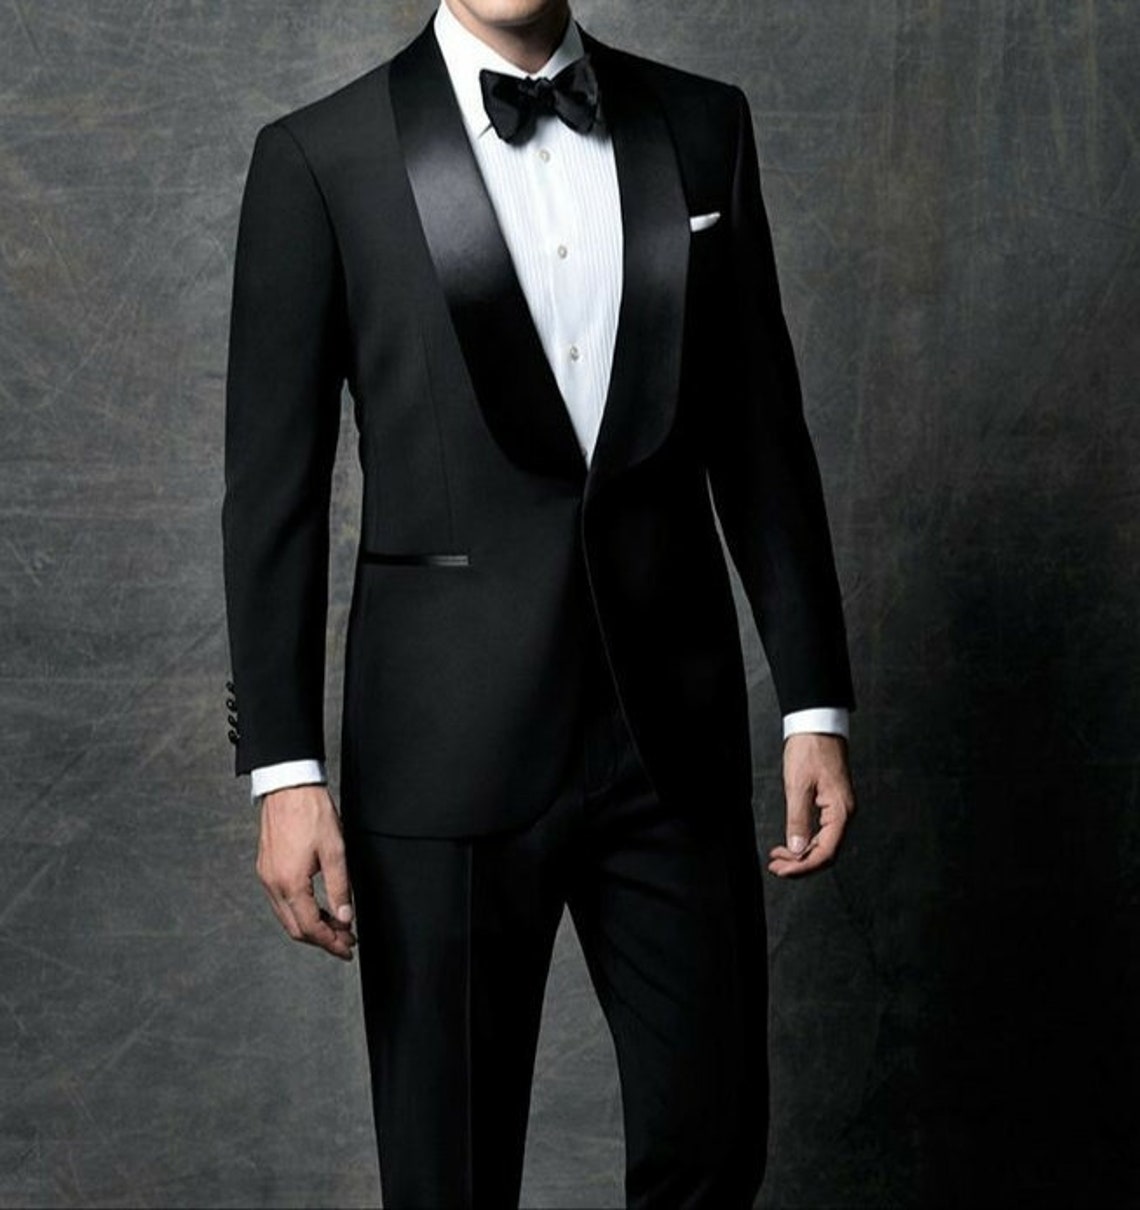 Men Suit Black Tuxedo Suit 2 Piece Stylish Suit Wedding Wear Suit for ...